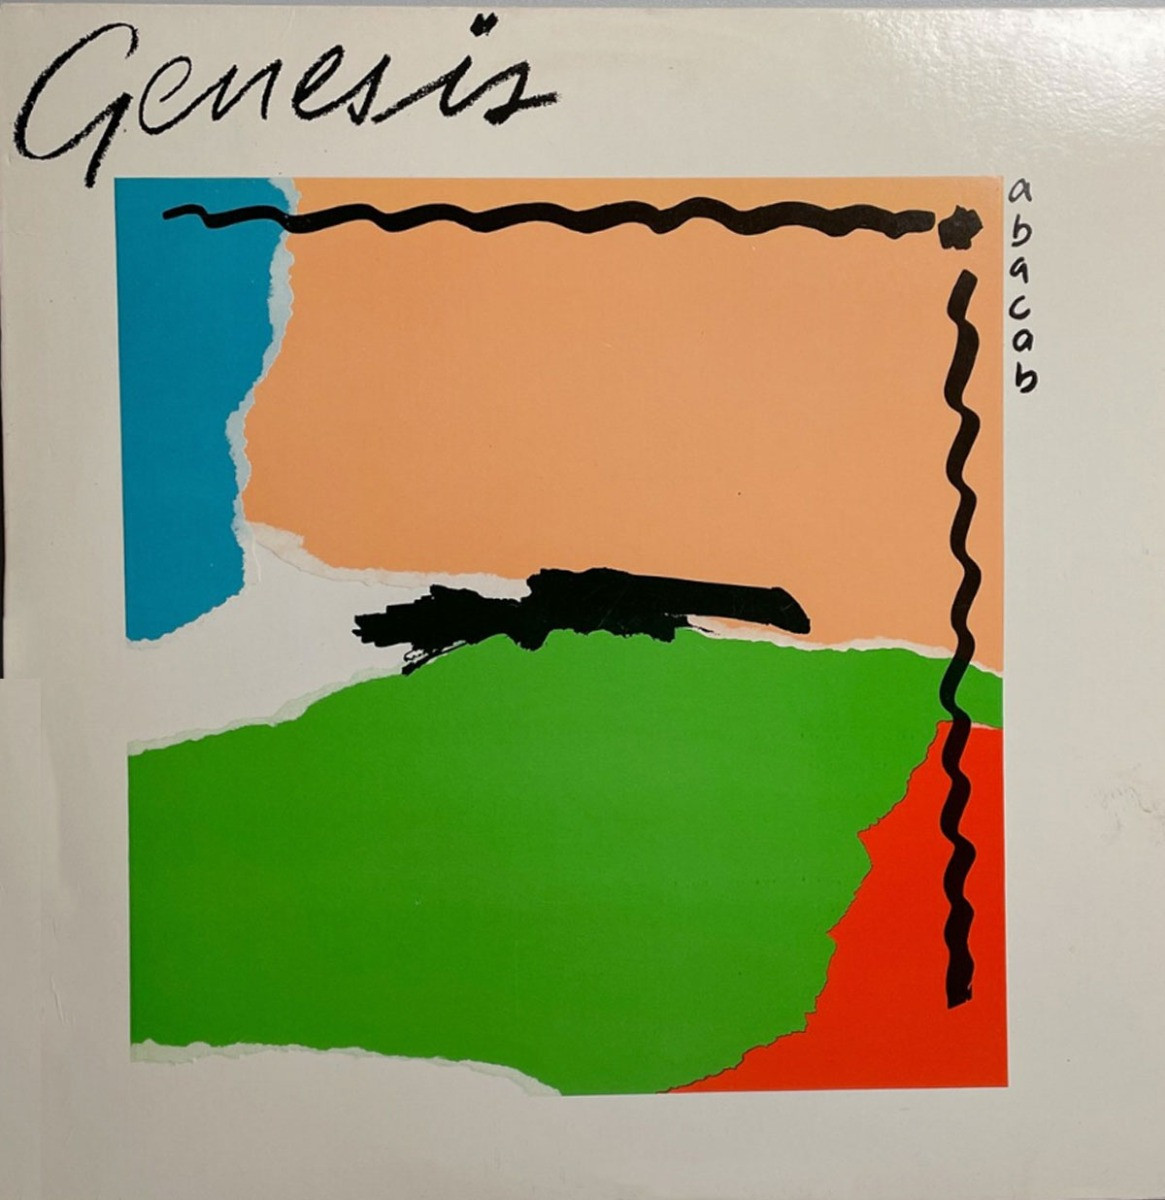 Genesis - Abacab LP